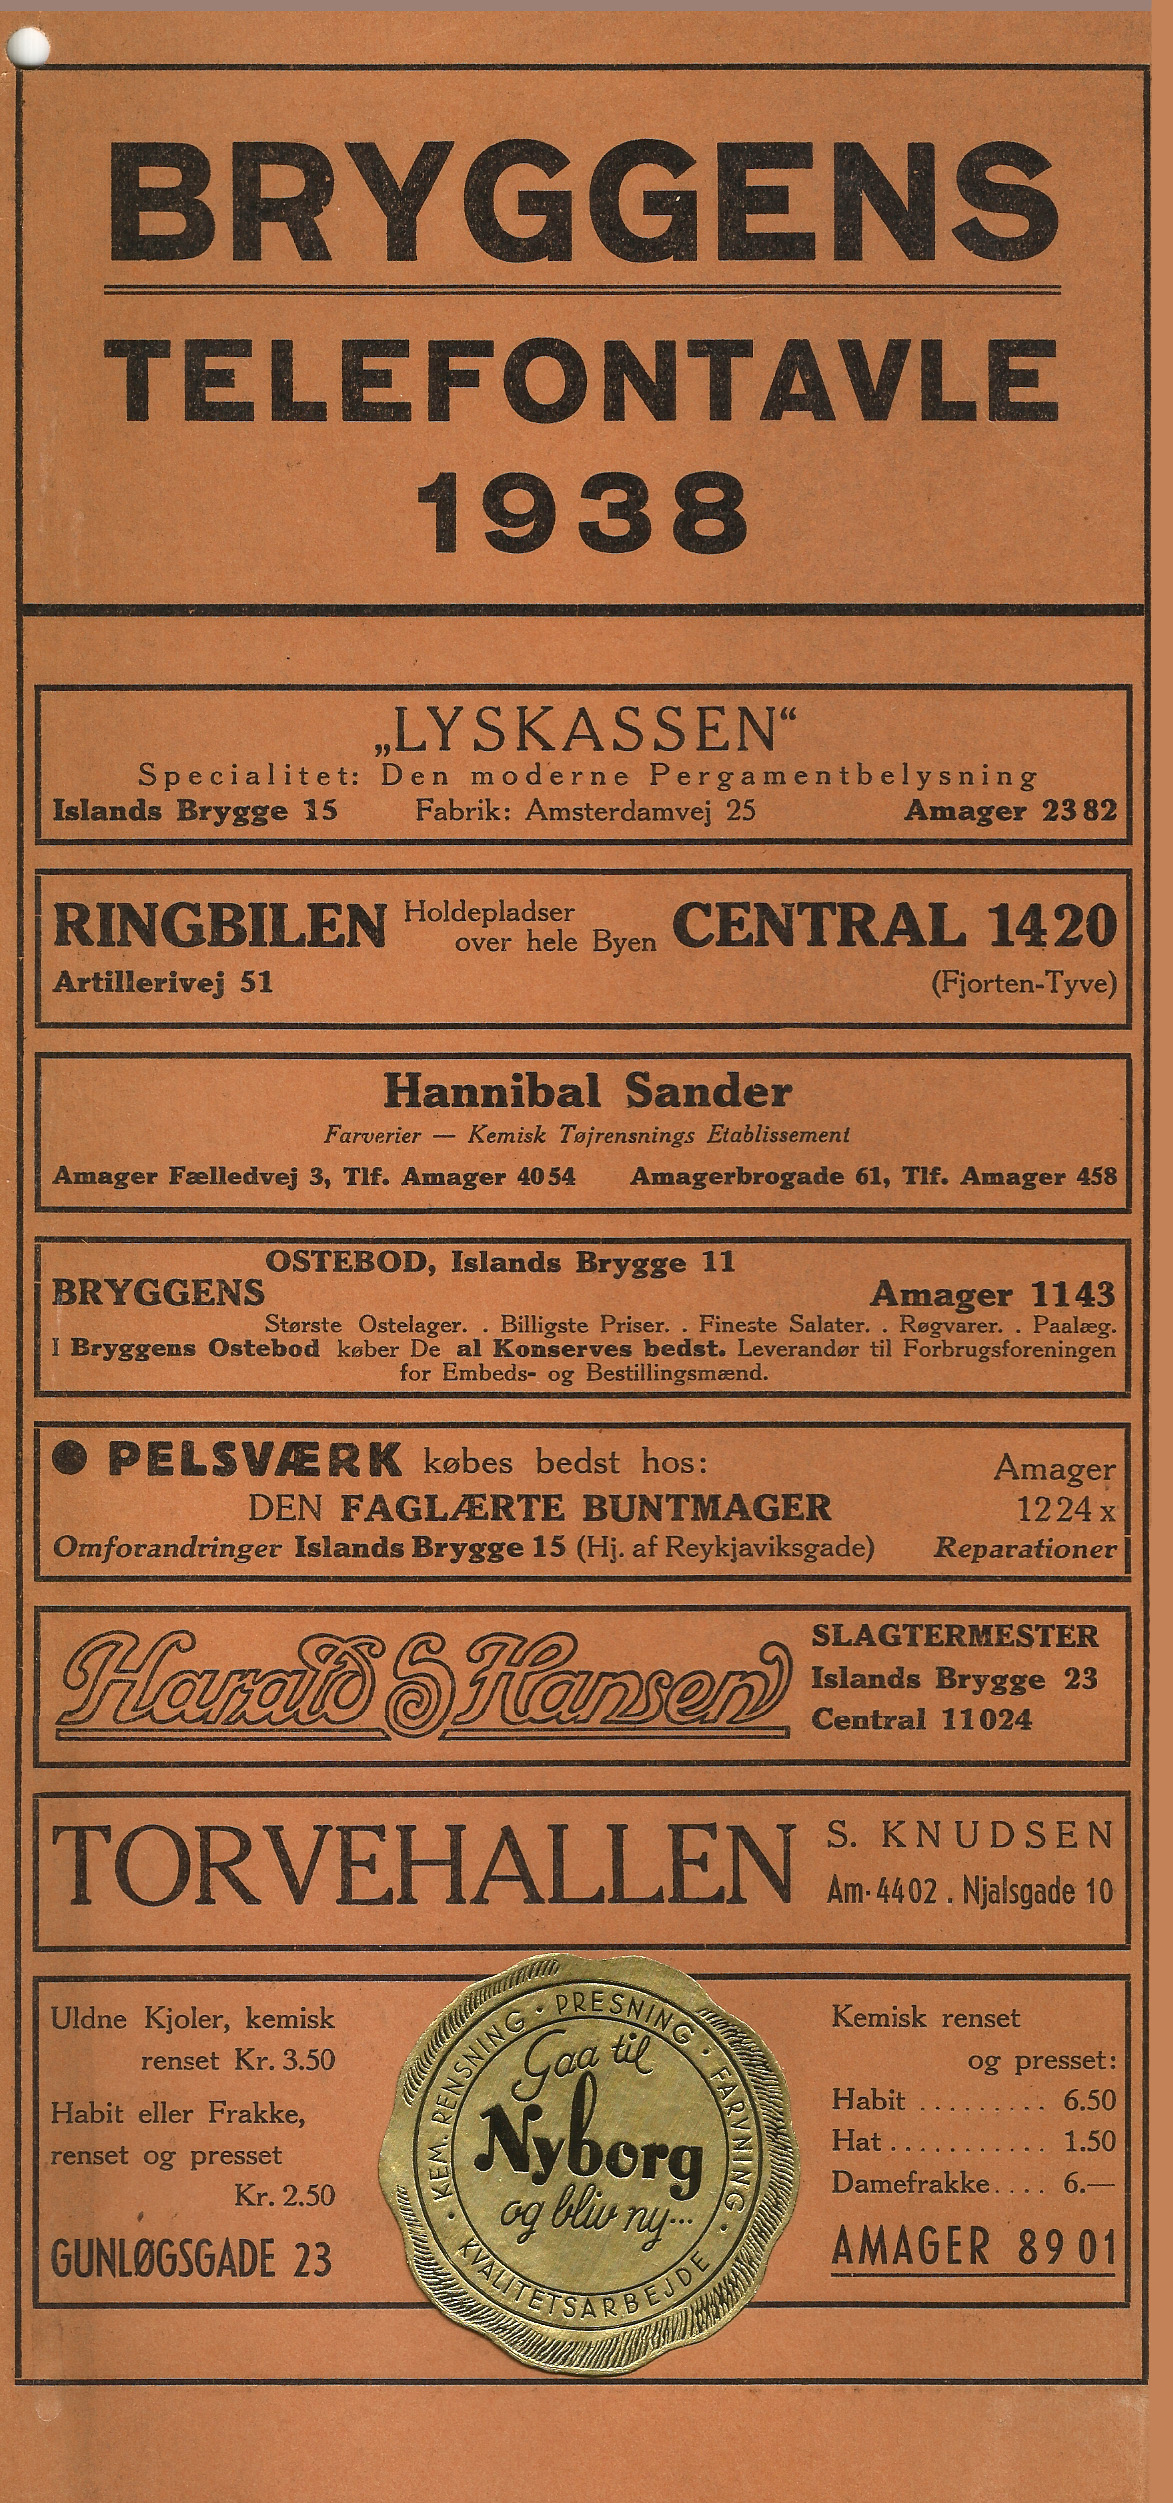 Bryggens telefontavle 1938 forside